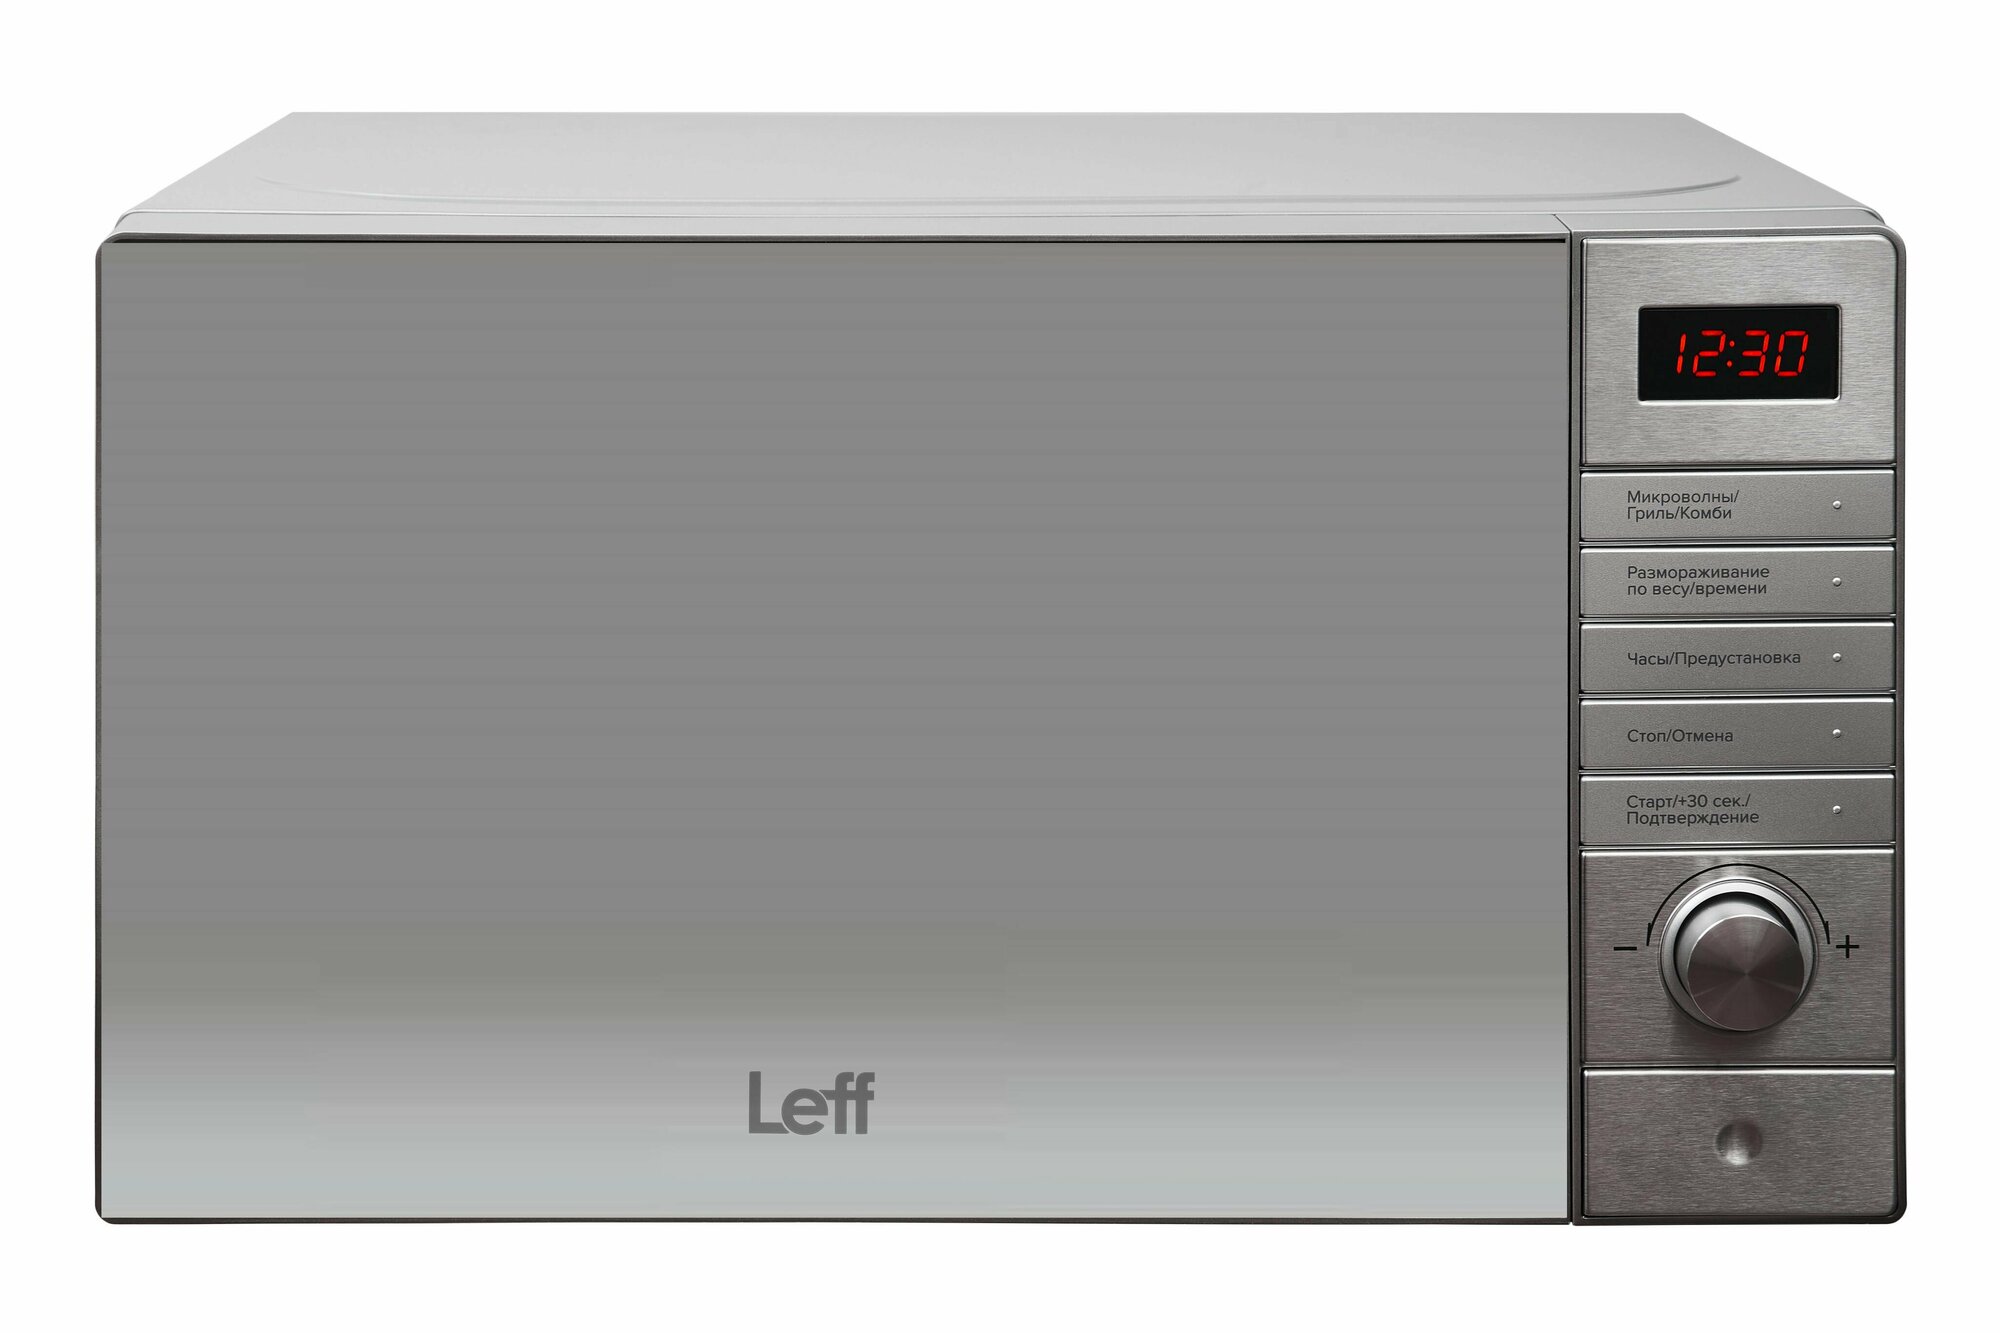 Микроволновая печь Leff 20MD731SG 20л, 700 Вт, гриль, серебро, зеркальная дверь, отложенный старт - фотография № 1